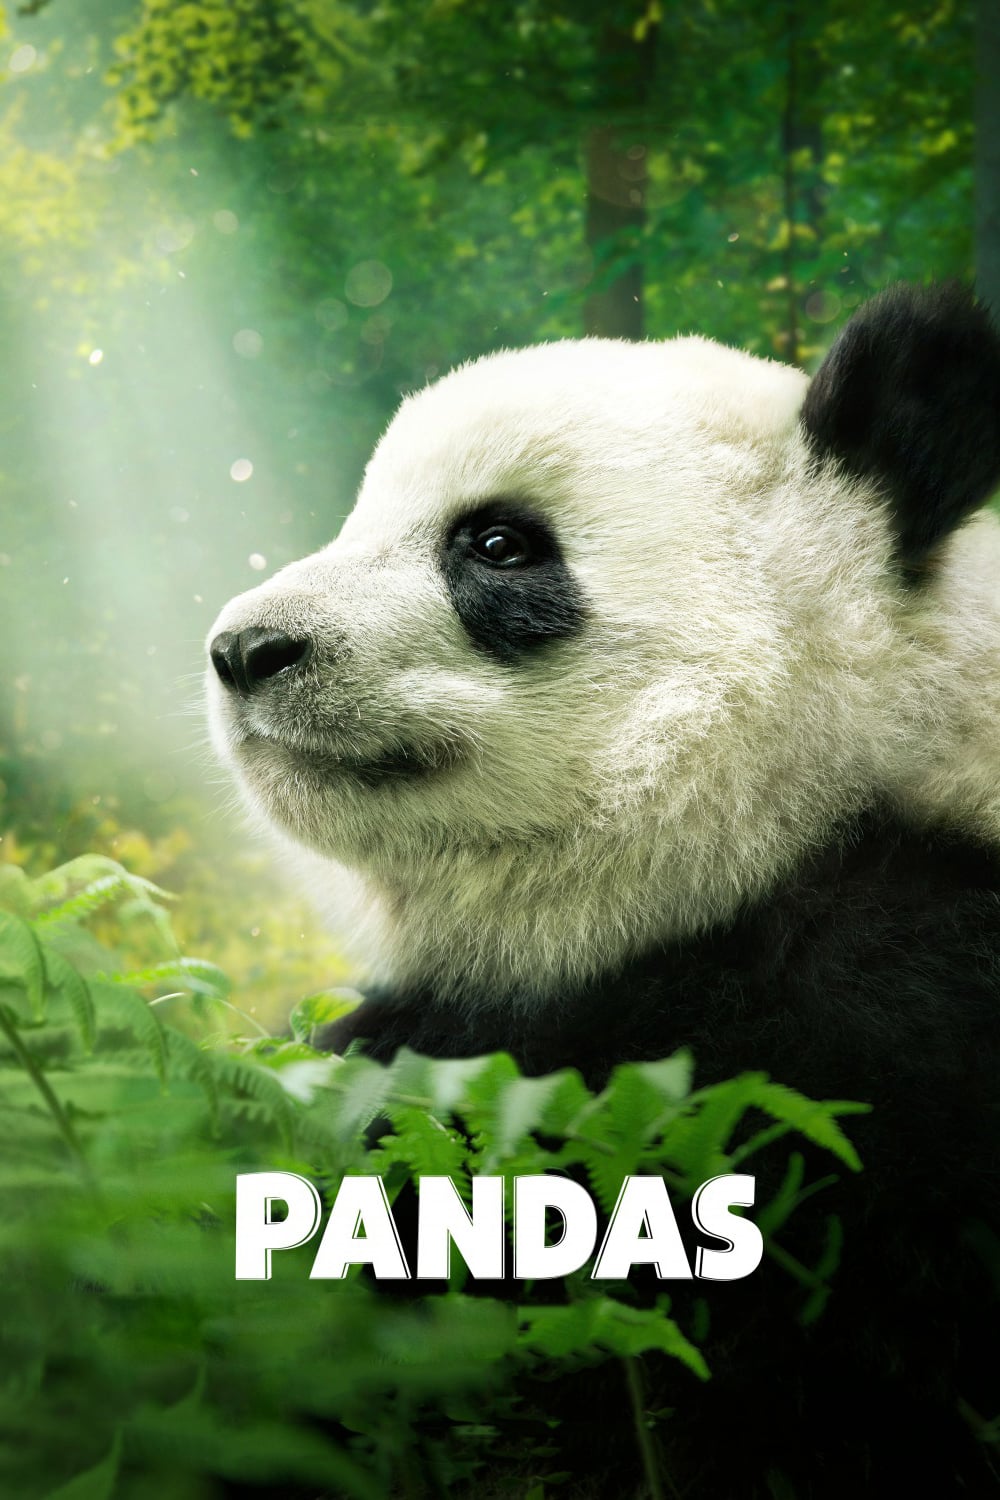 دانلود مستند Pandas 2018